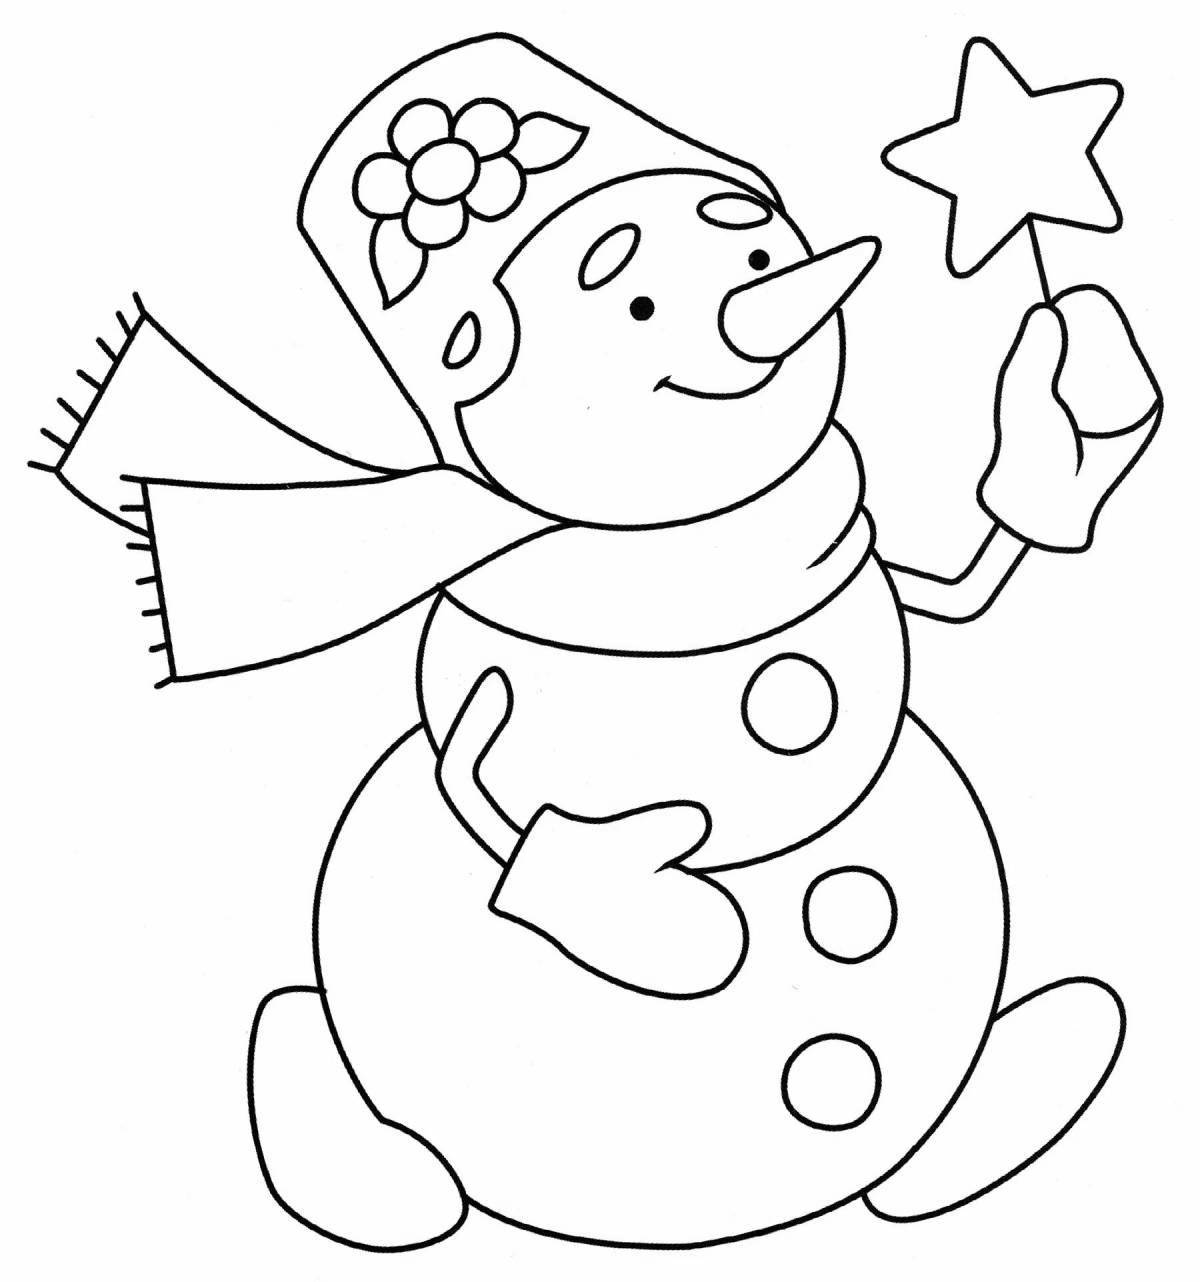 Причудливая раскраска смешной снеговик для детей